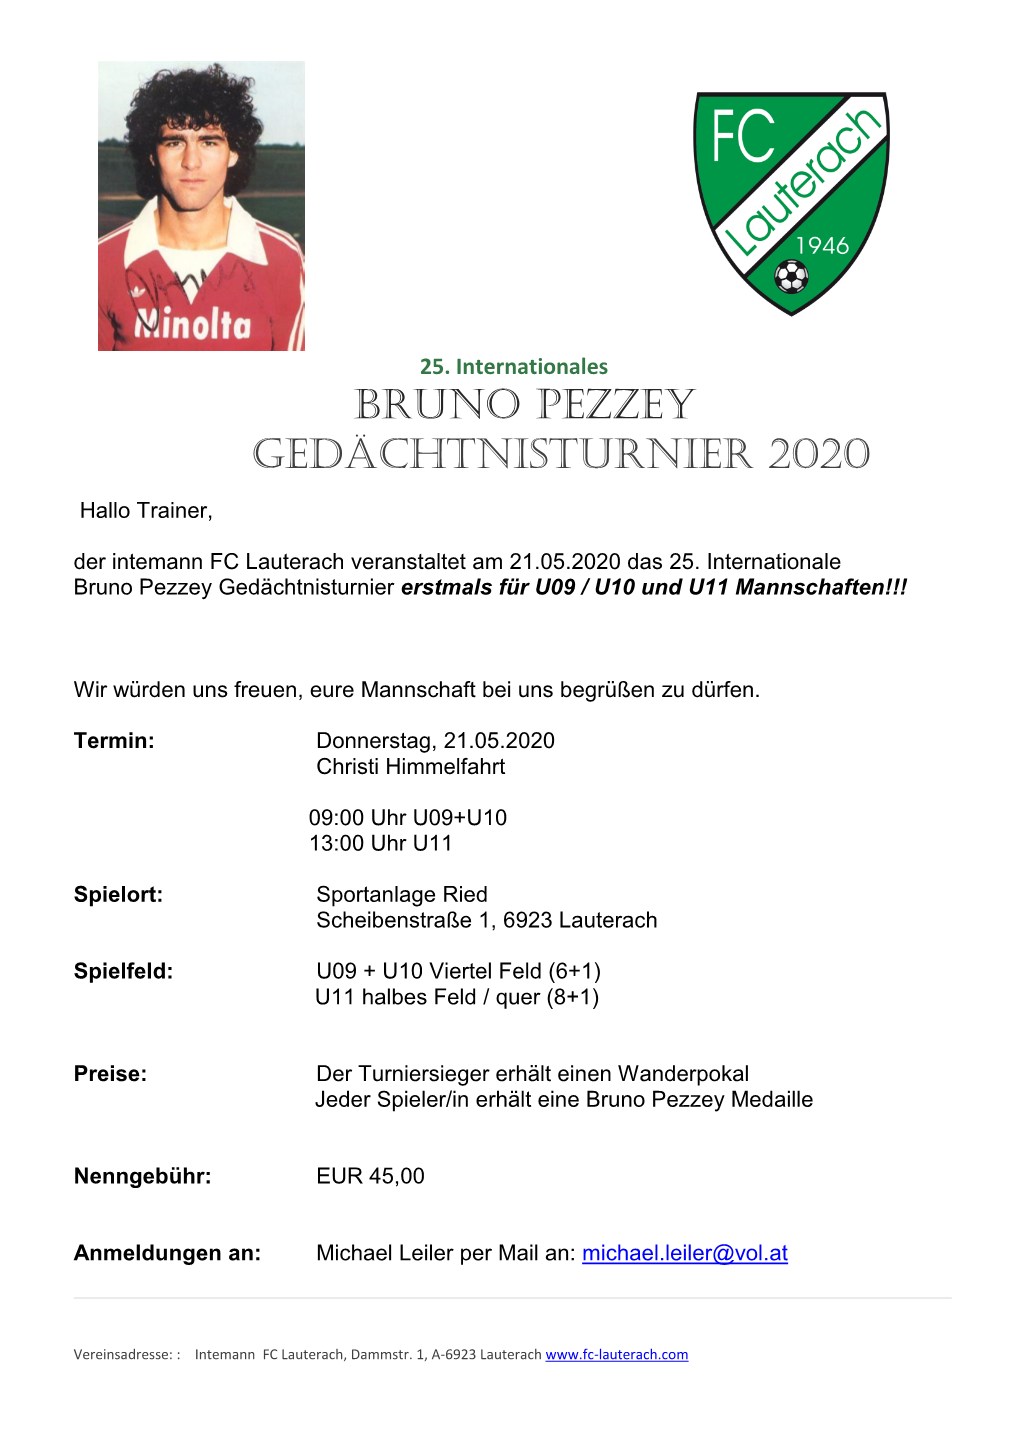 Bruno Pezzey Gedächtnisturnier 2020